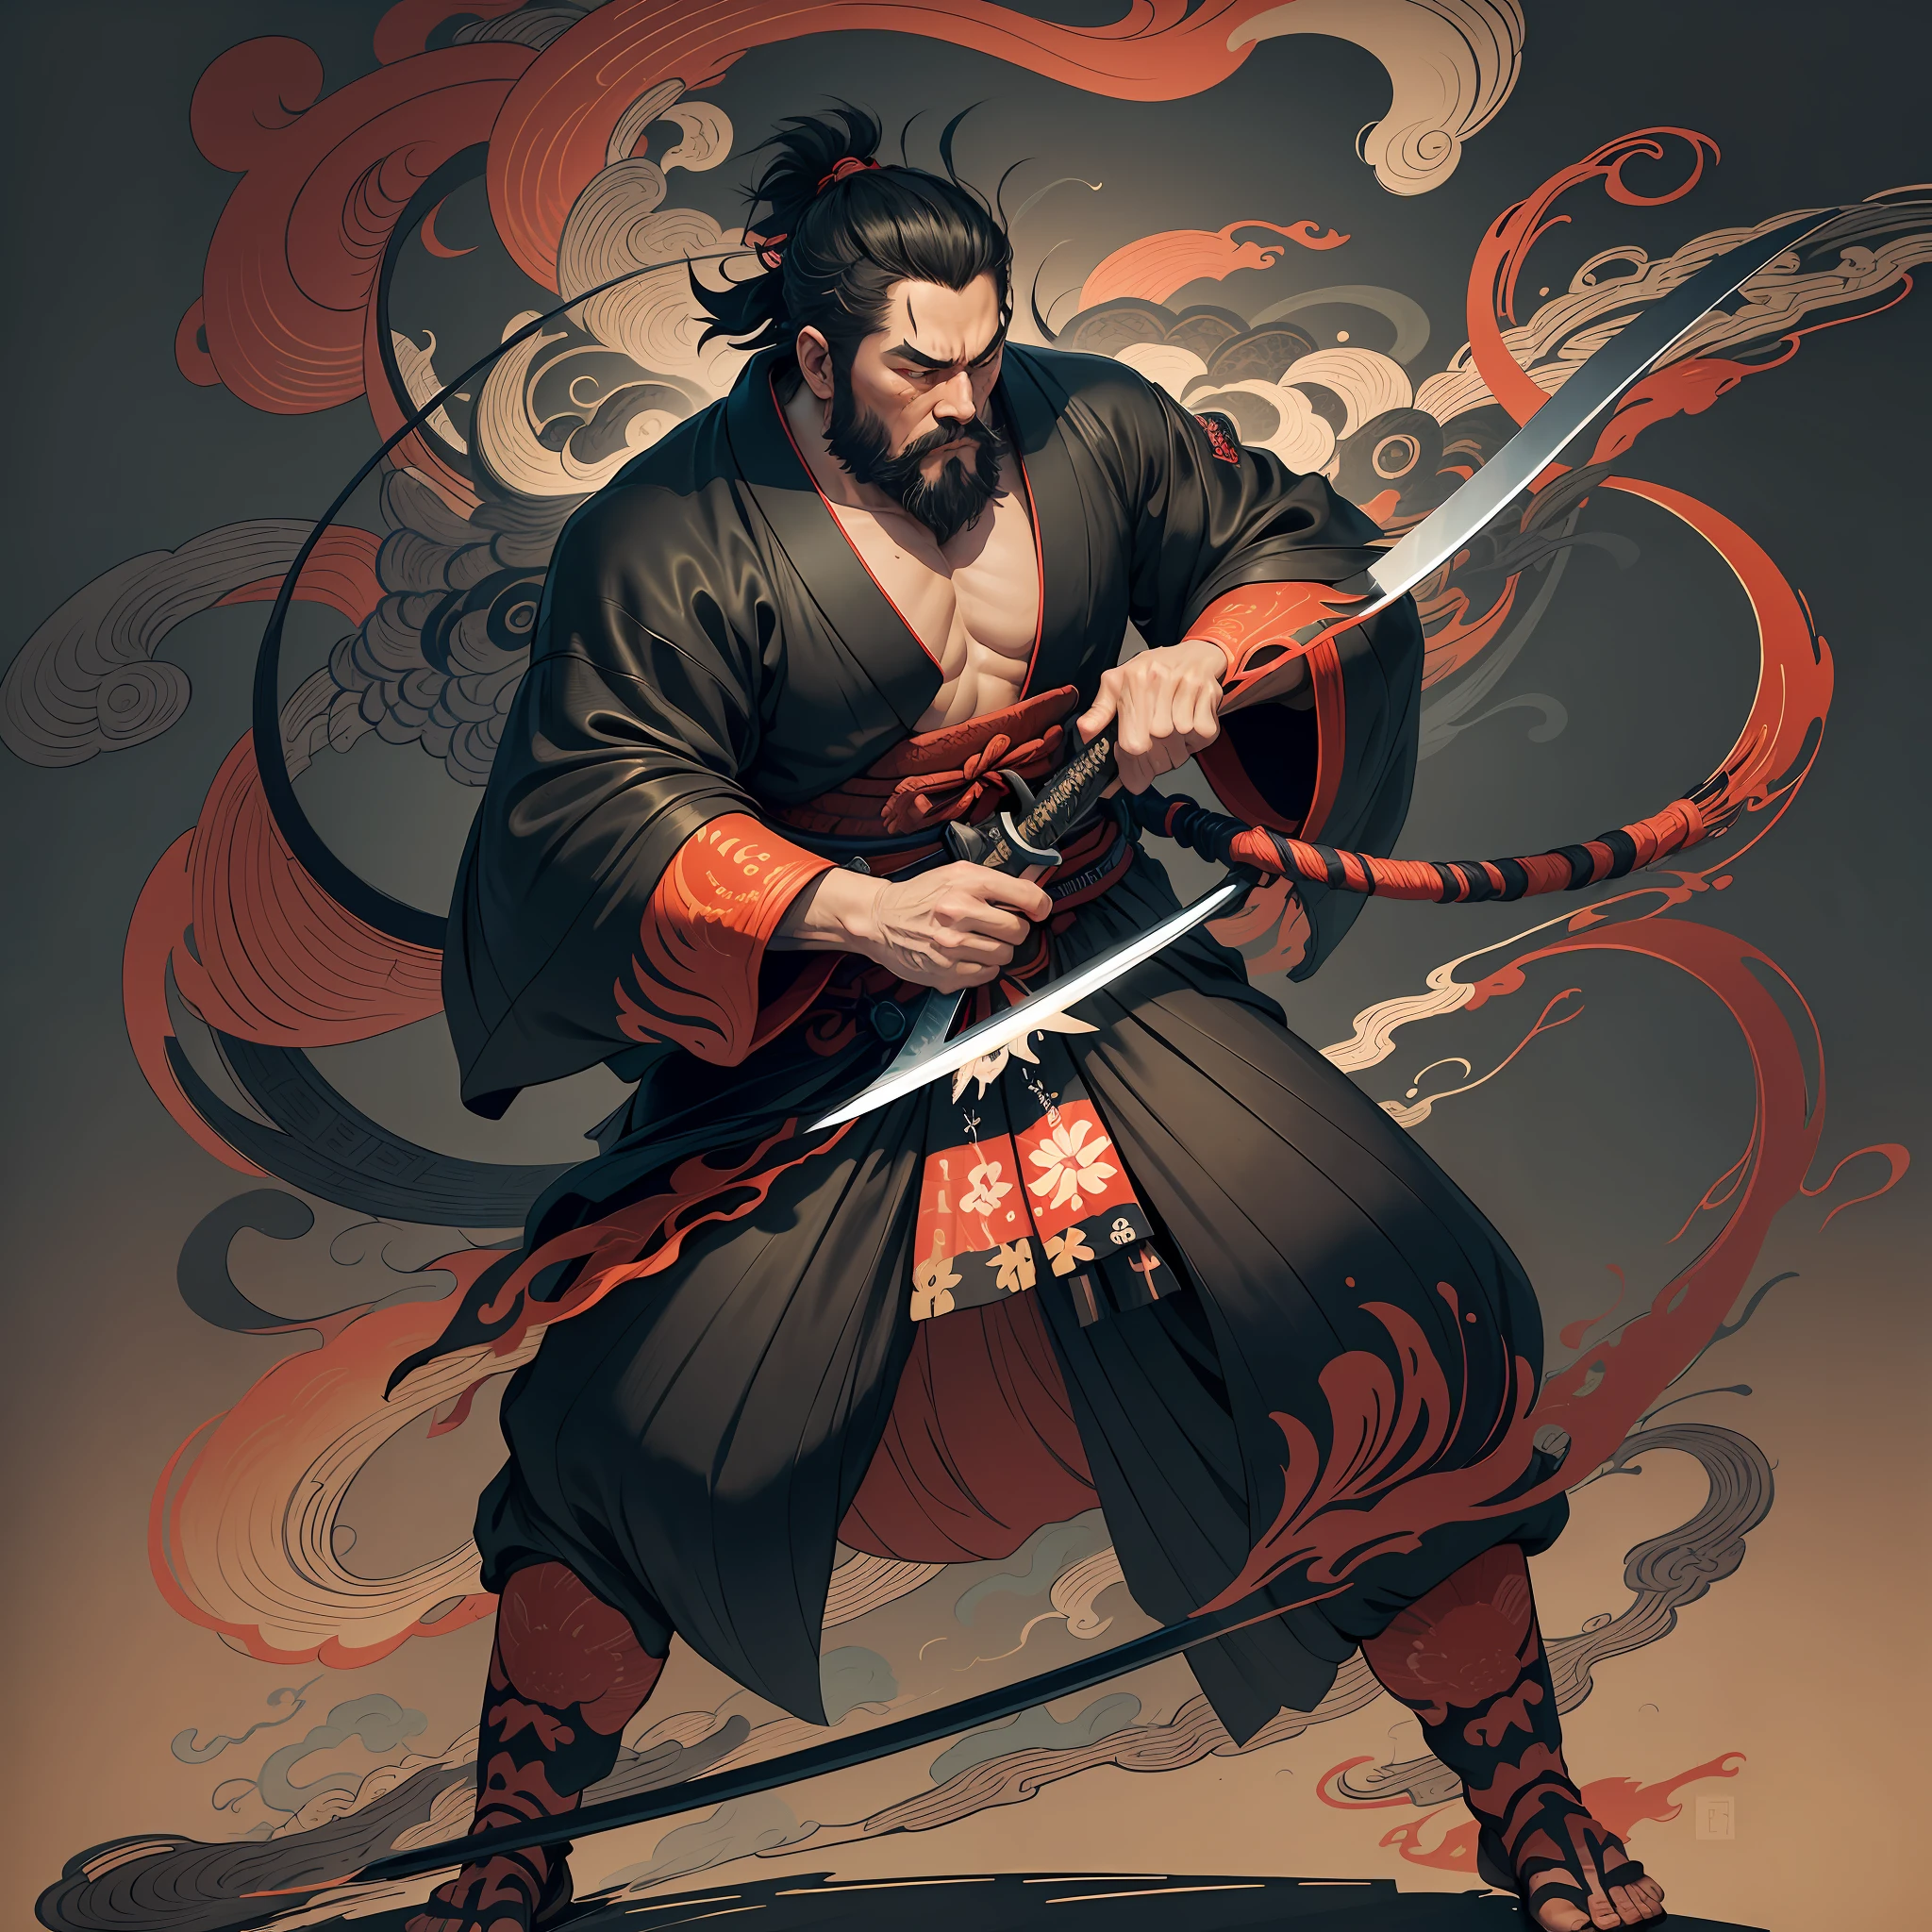 Это роспись в полный рост натуральными цветами в стиле укиё-э.. Миямото Мусаси — японский самурай с большим телом, похожим на силача. У него грубое лицо, короткие черные волосы, и короткий, подстриженная борода. Он праведный самурай, который борется со злом. Он носит черное кимоно. Хакама должна быть немного длиннее и иметь плавную форму, развевающуюся на ветру.. В правой руке он держит меч, из которого вырывается пламя.. Фон — клубящееся пламя в стиле Кацусика Хокусай.. Шедевр высокого разрешения в стиле укиё-э, с высочайшим качеством --auto --s2